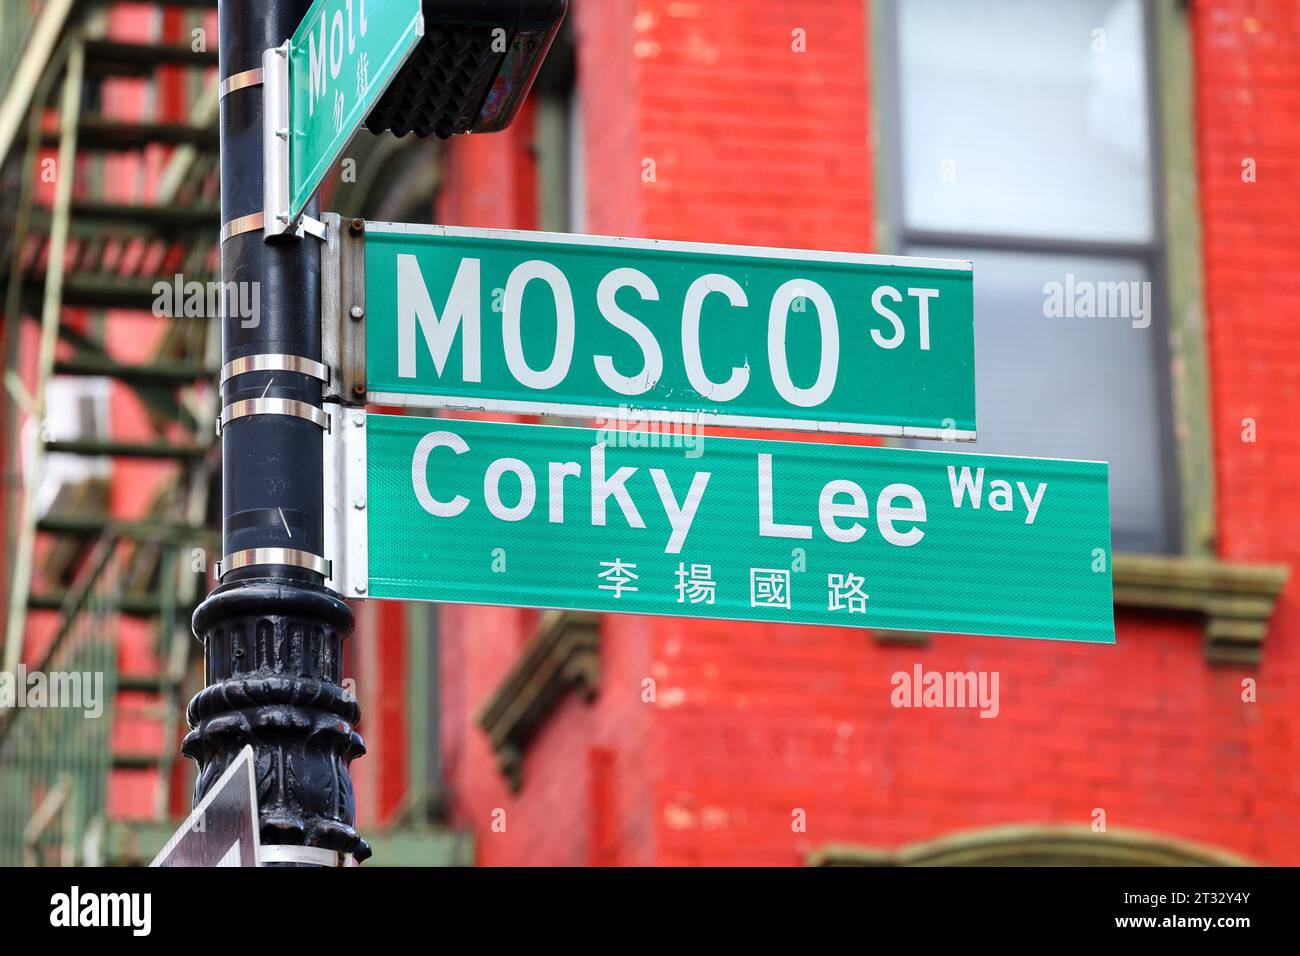 22 octobre 2023, New York. Les gens célèbrent Corky Lee Way 李揚國路 et le co-nom de Mosco St dans le quartier chinois de Manhattan. Corky Lee était un photojournaliste, photographe et militant des droits civiques qui a documenté l'histoire des Américains d'origine asiatique ; il est parfois désigné comme le « lauréat non officiel des photographes américains d'origine asiatique ». M. Lee est décédé en 2021 des suites de complications dues à la COVID-19. Mosco Street a été nommé en l'honneur de Frank Mosco, un activiste communautaire. 華埠, 紐約, 唐人街 Banque D'Images